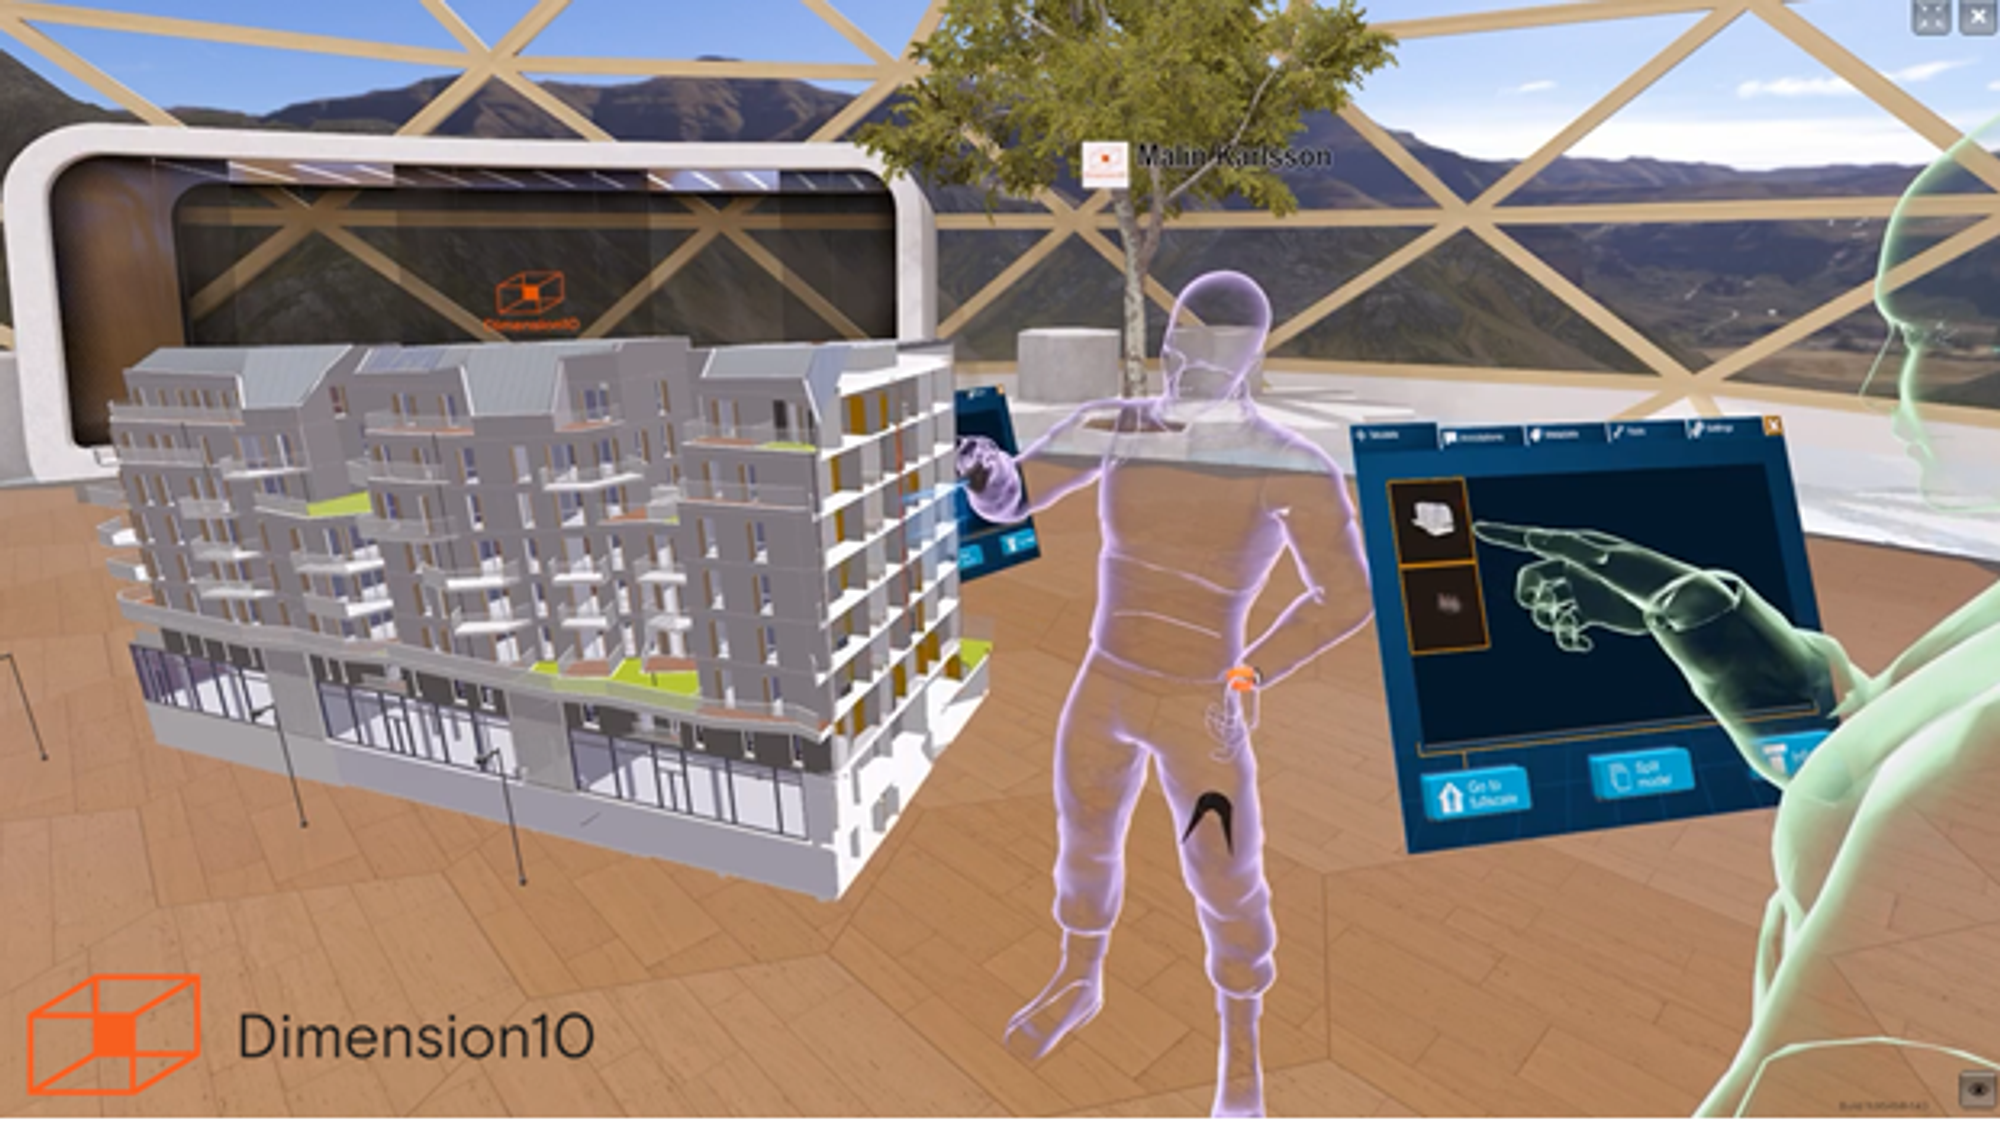 Eksempel på virtuell tur i byggeprosjektet med Dimension10